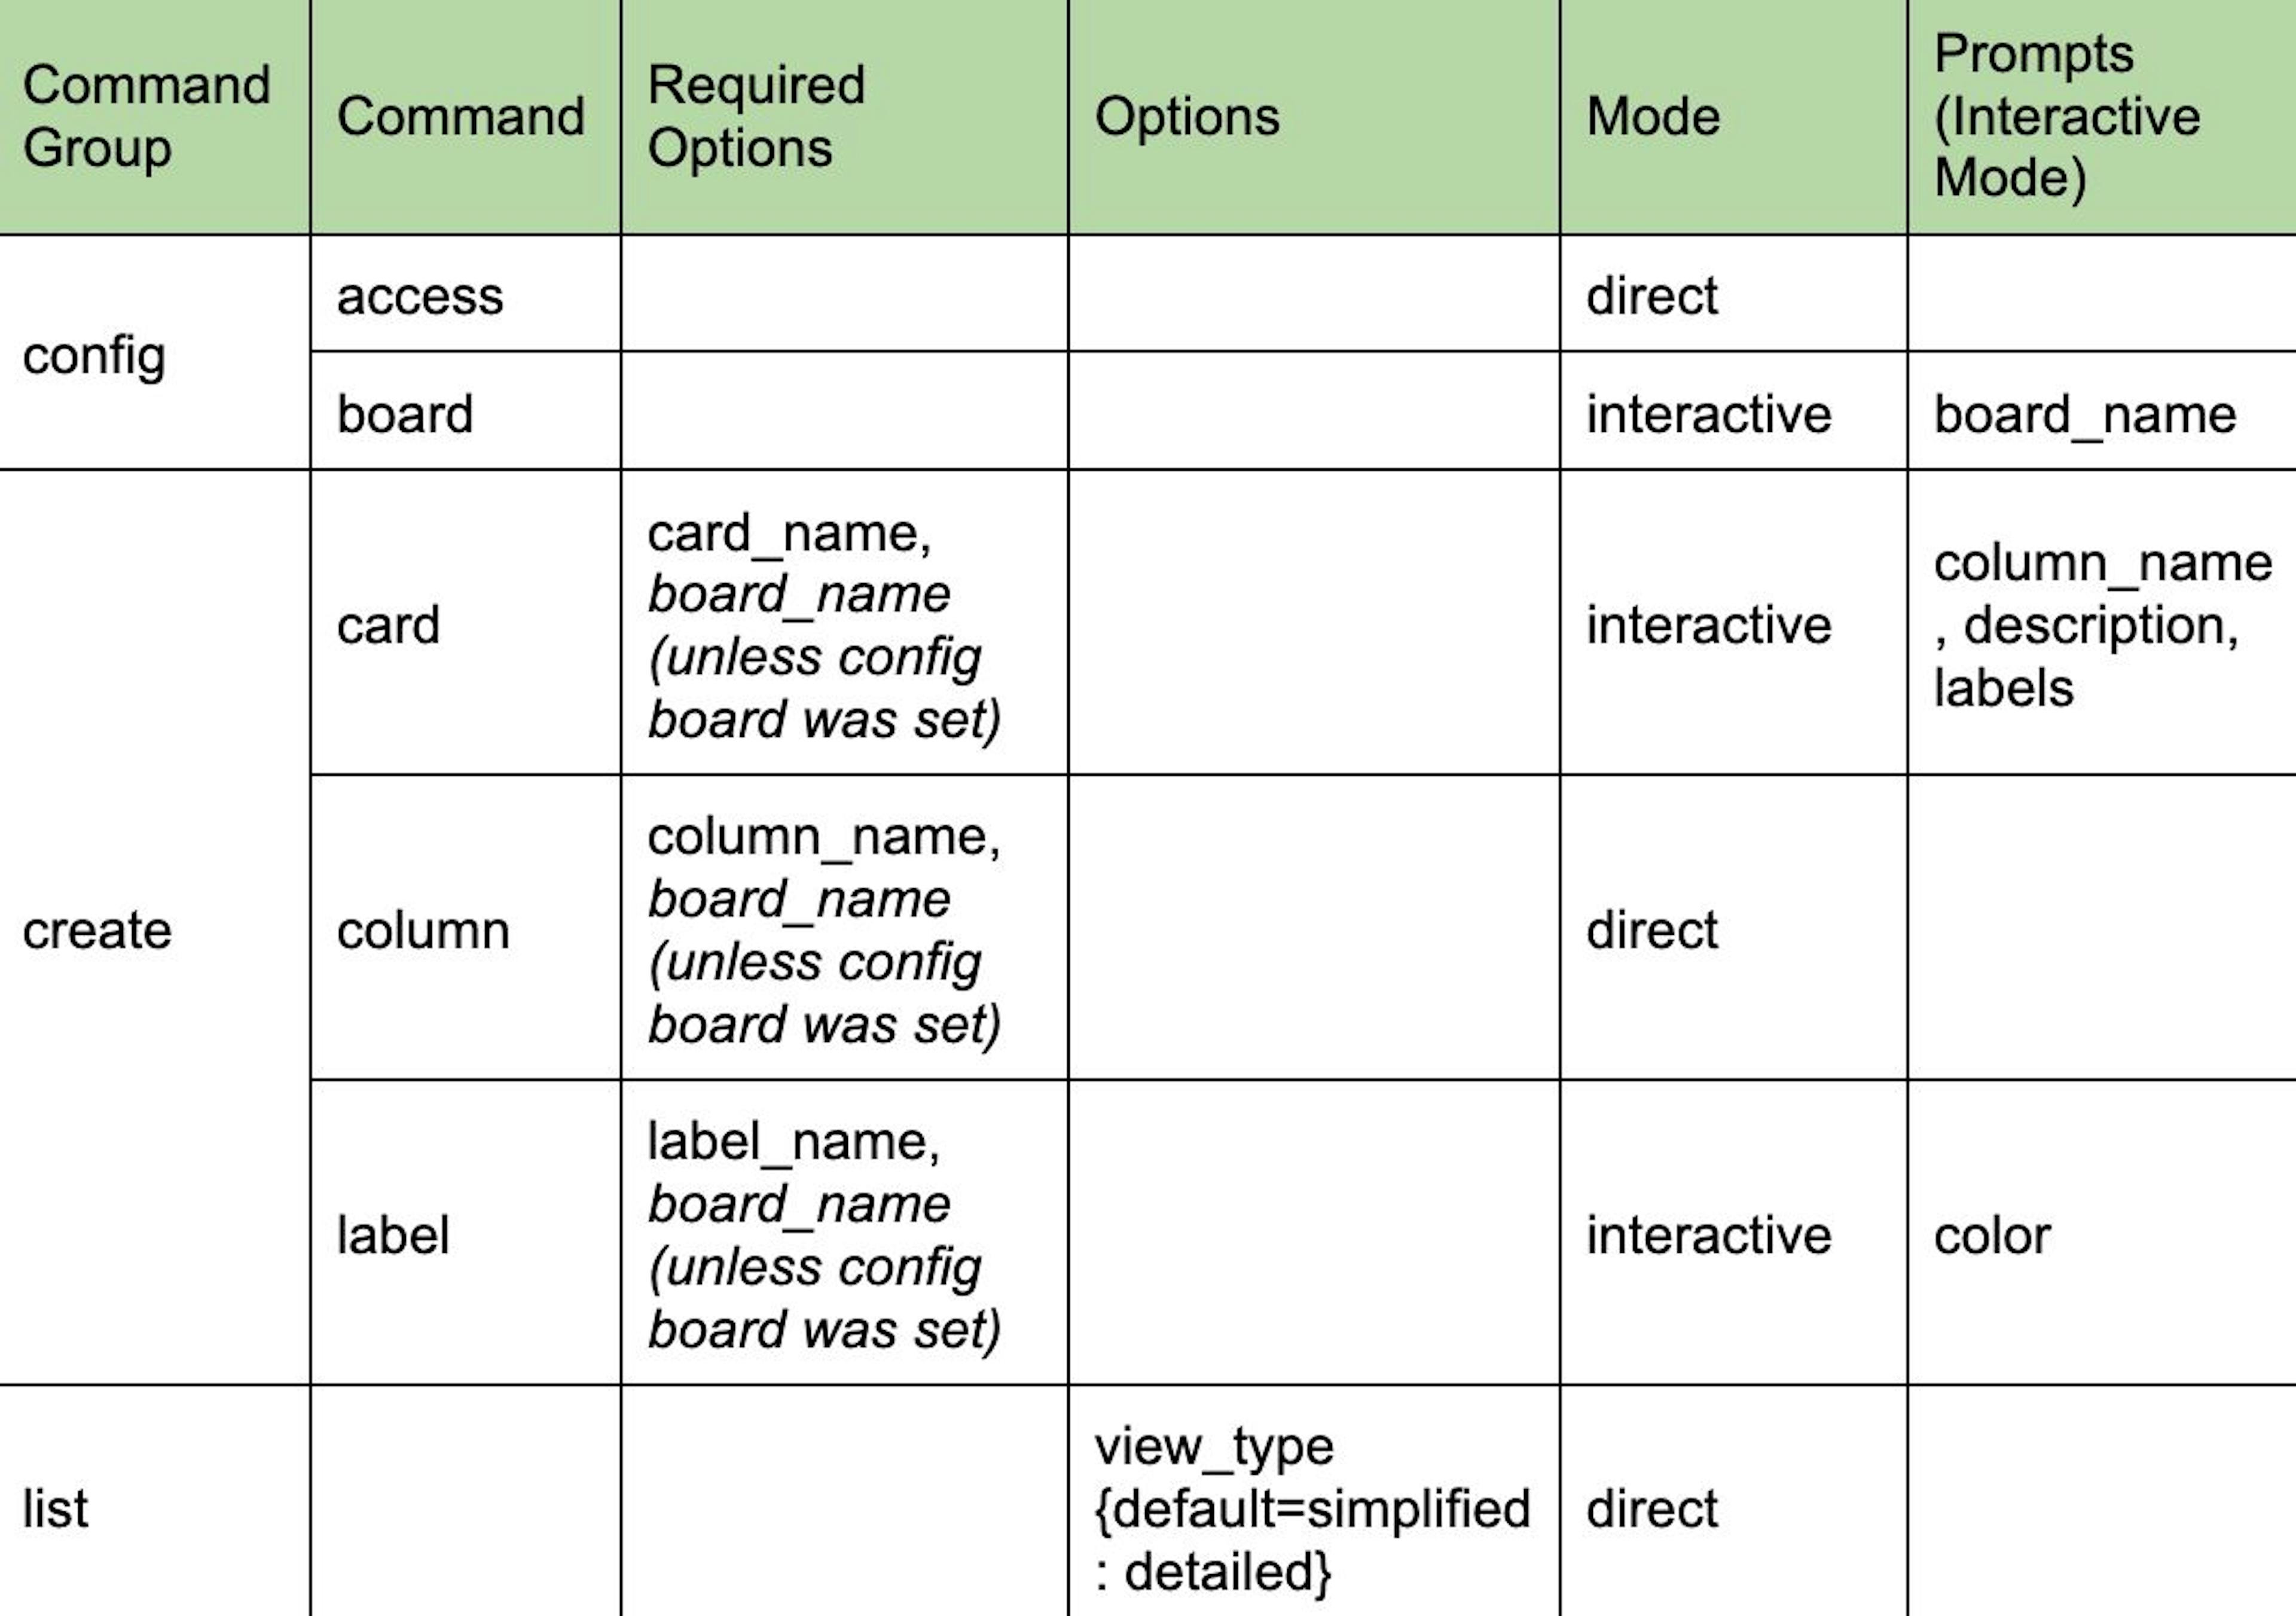 Vista de tabla detallada de la estructura de la CLI según los requisitos